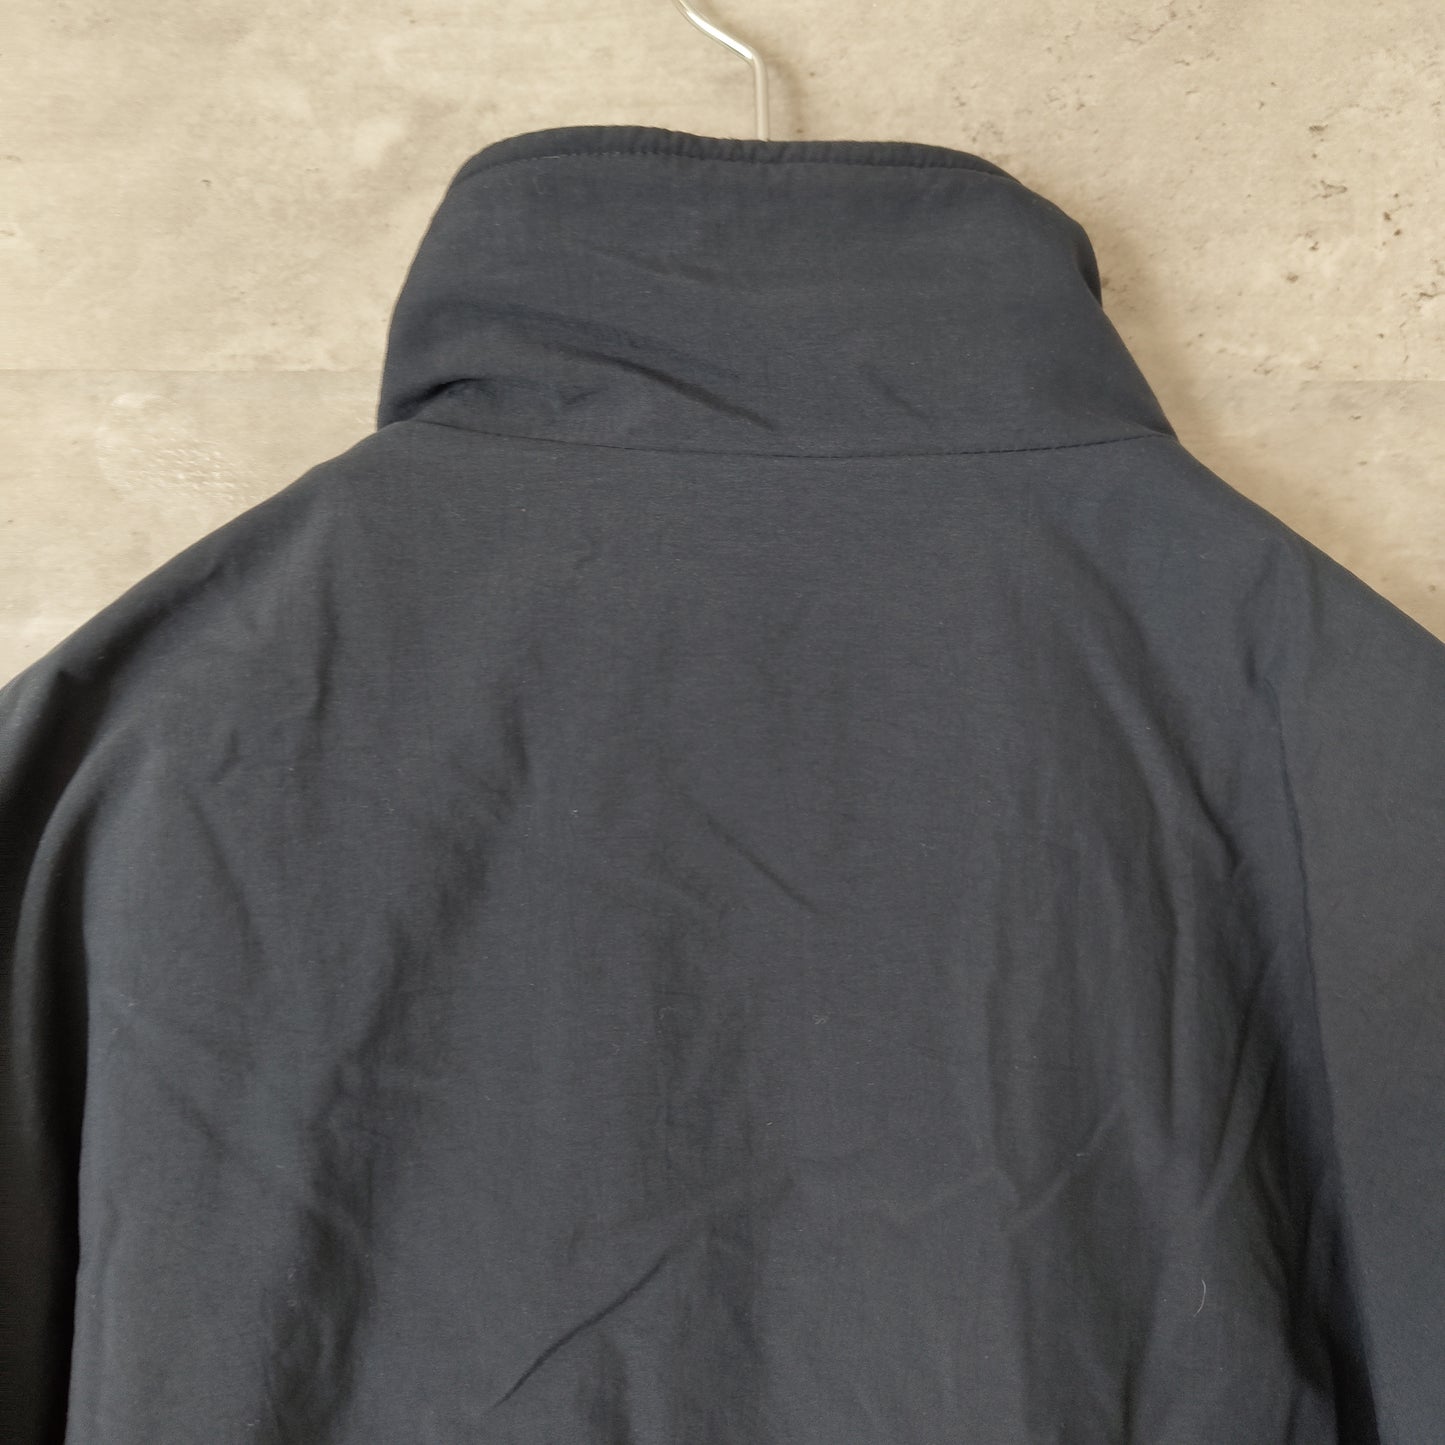 [EddieBauer] inner cotton nylon jacket